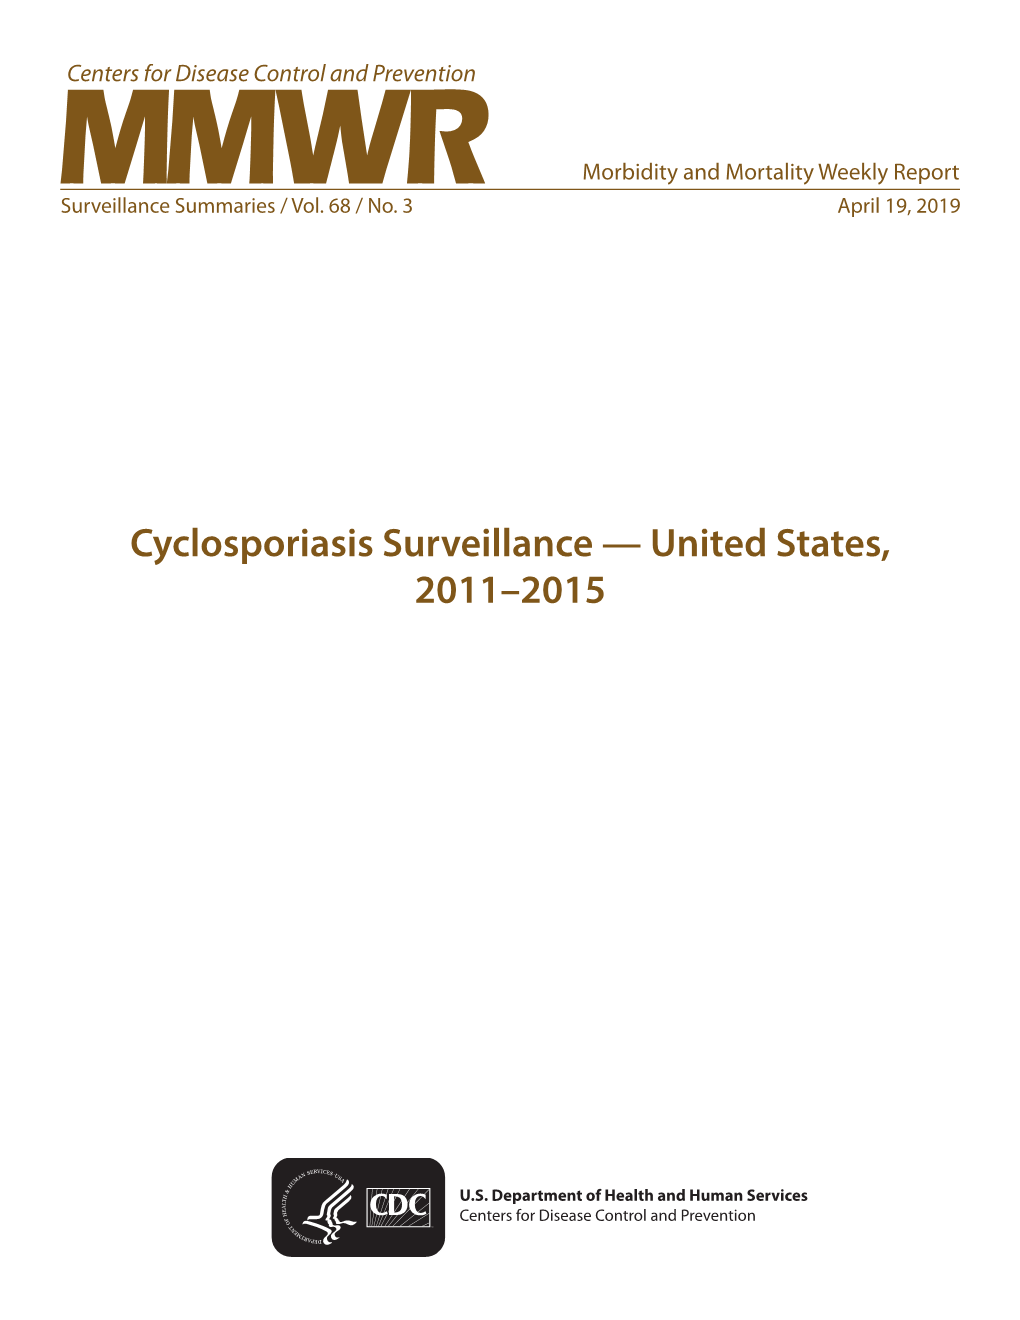 Cyclosporiasis Surveillance — United States, 2011–2015